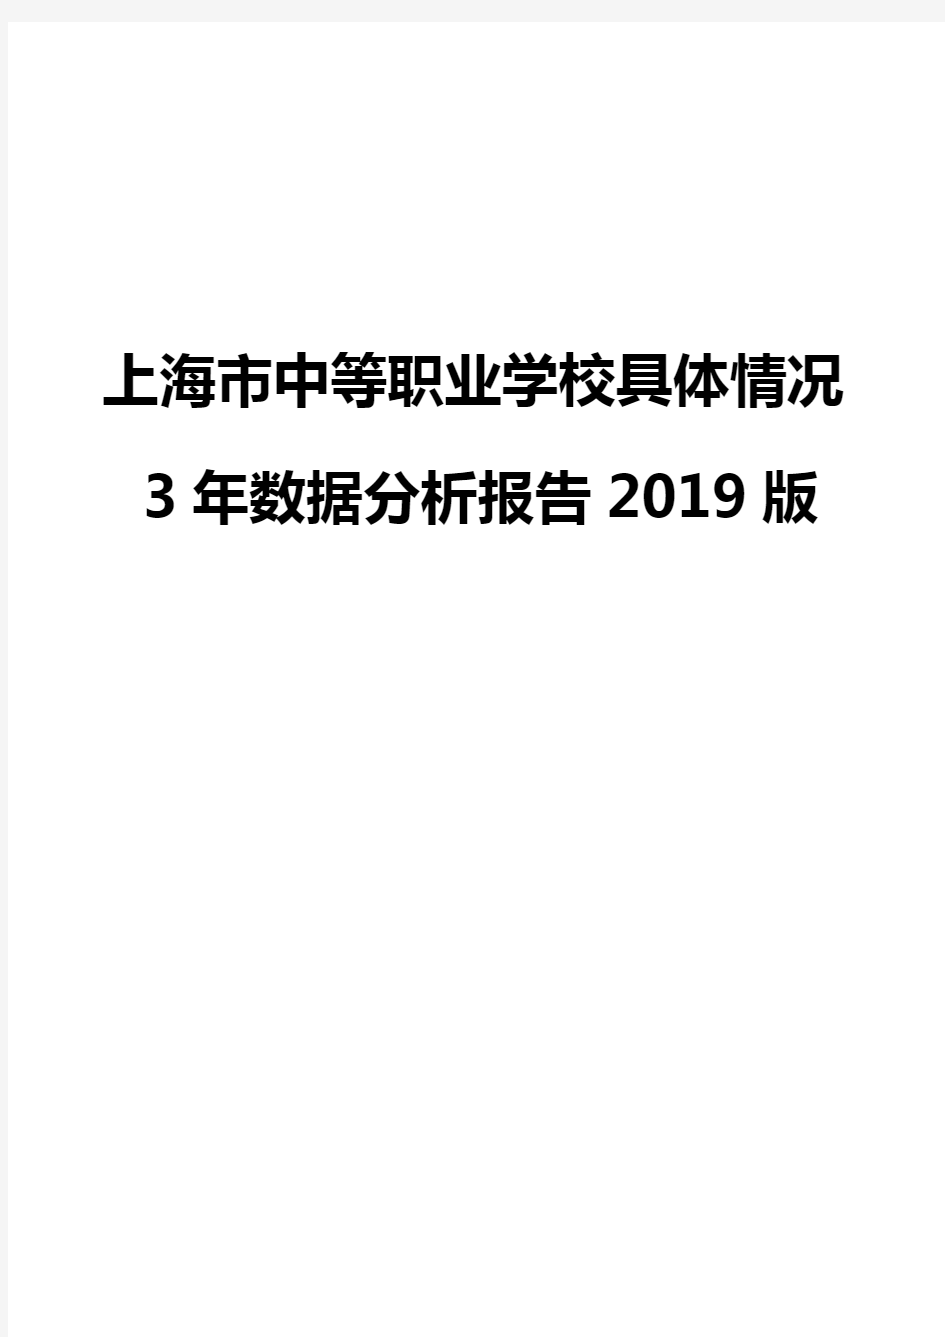 上海市中等职业学校具体情况3年数据分析报告2019版